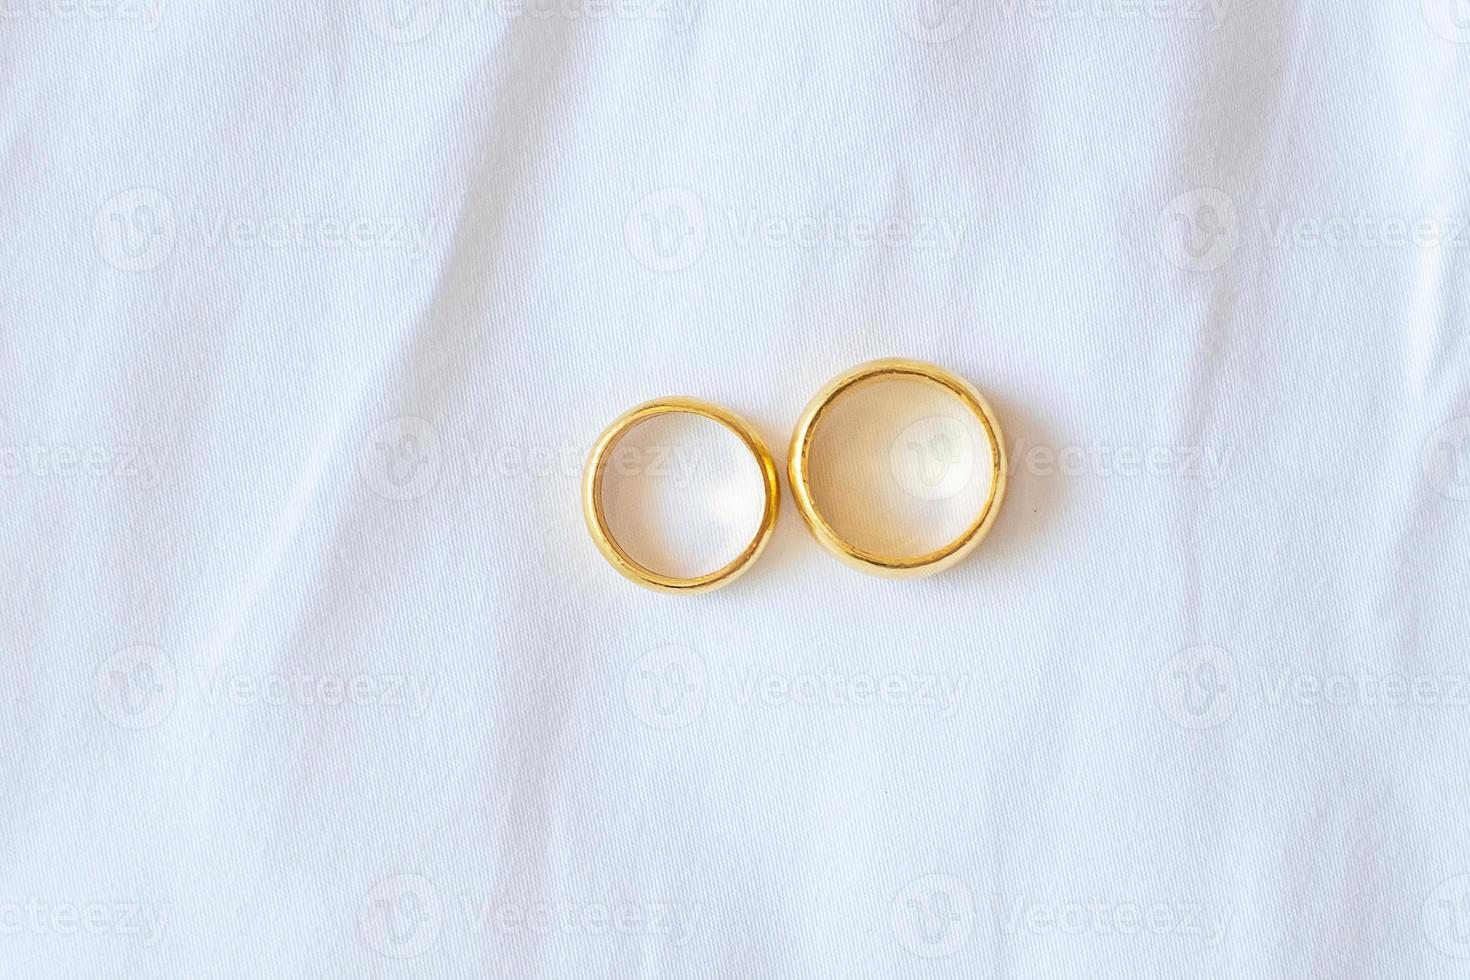 casal anel de noivado dourado sobre fundo branco. amor, juntos e feliz dia dos namorados conceito foto